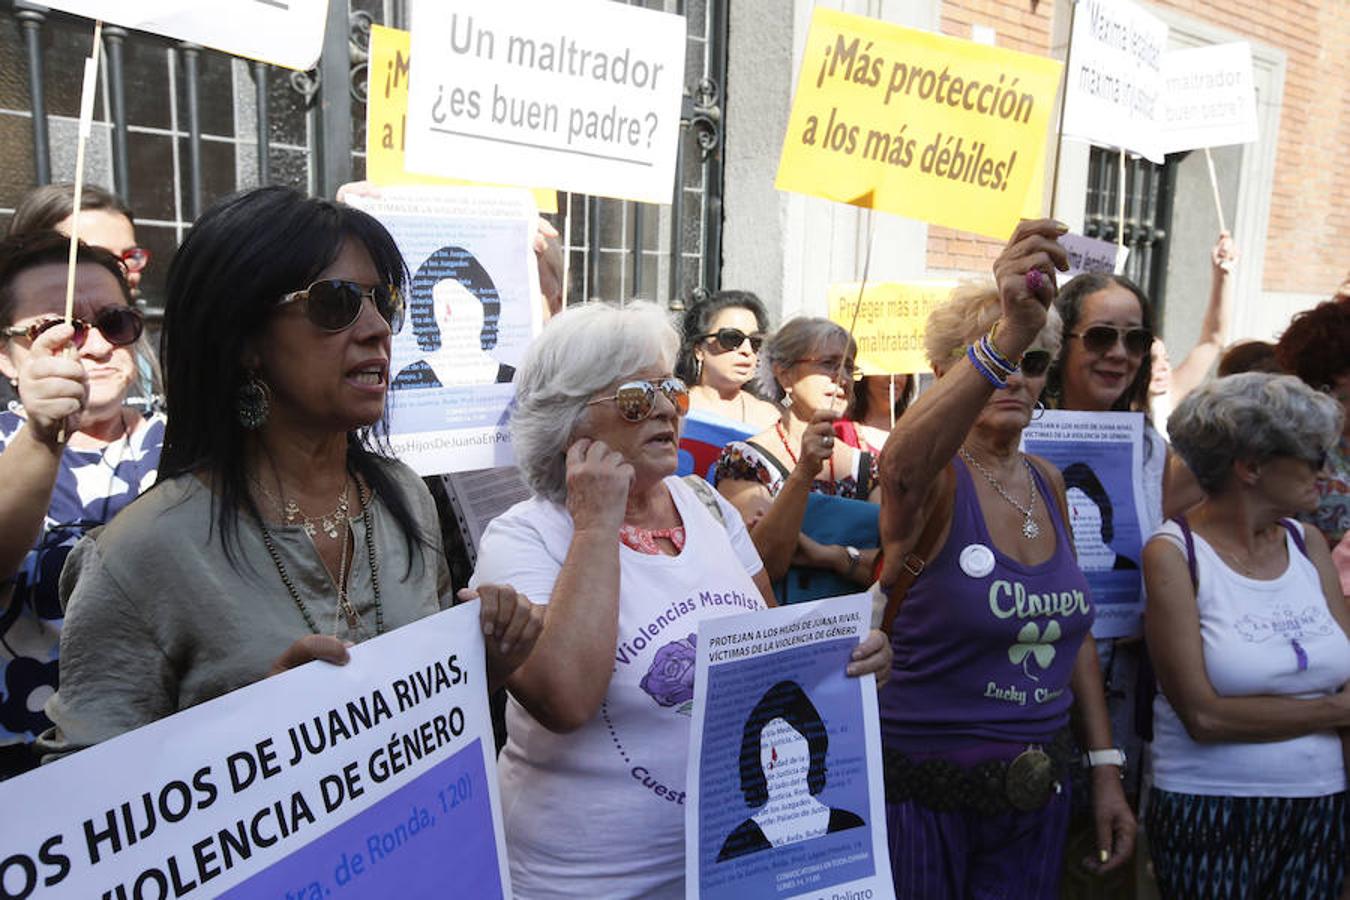 La cantante Cristina del Valle participa junto con las plataformas en apoyo a Juana Rivas, en la protesta de apoyo frente al Ministerio de Justicia en Madrid. 